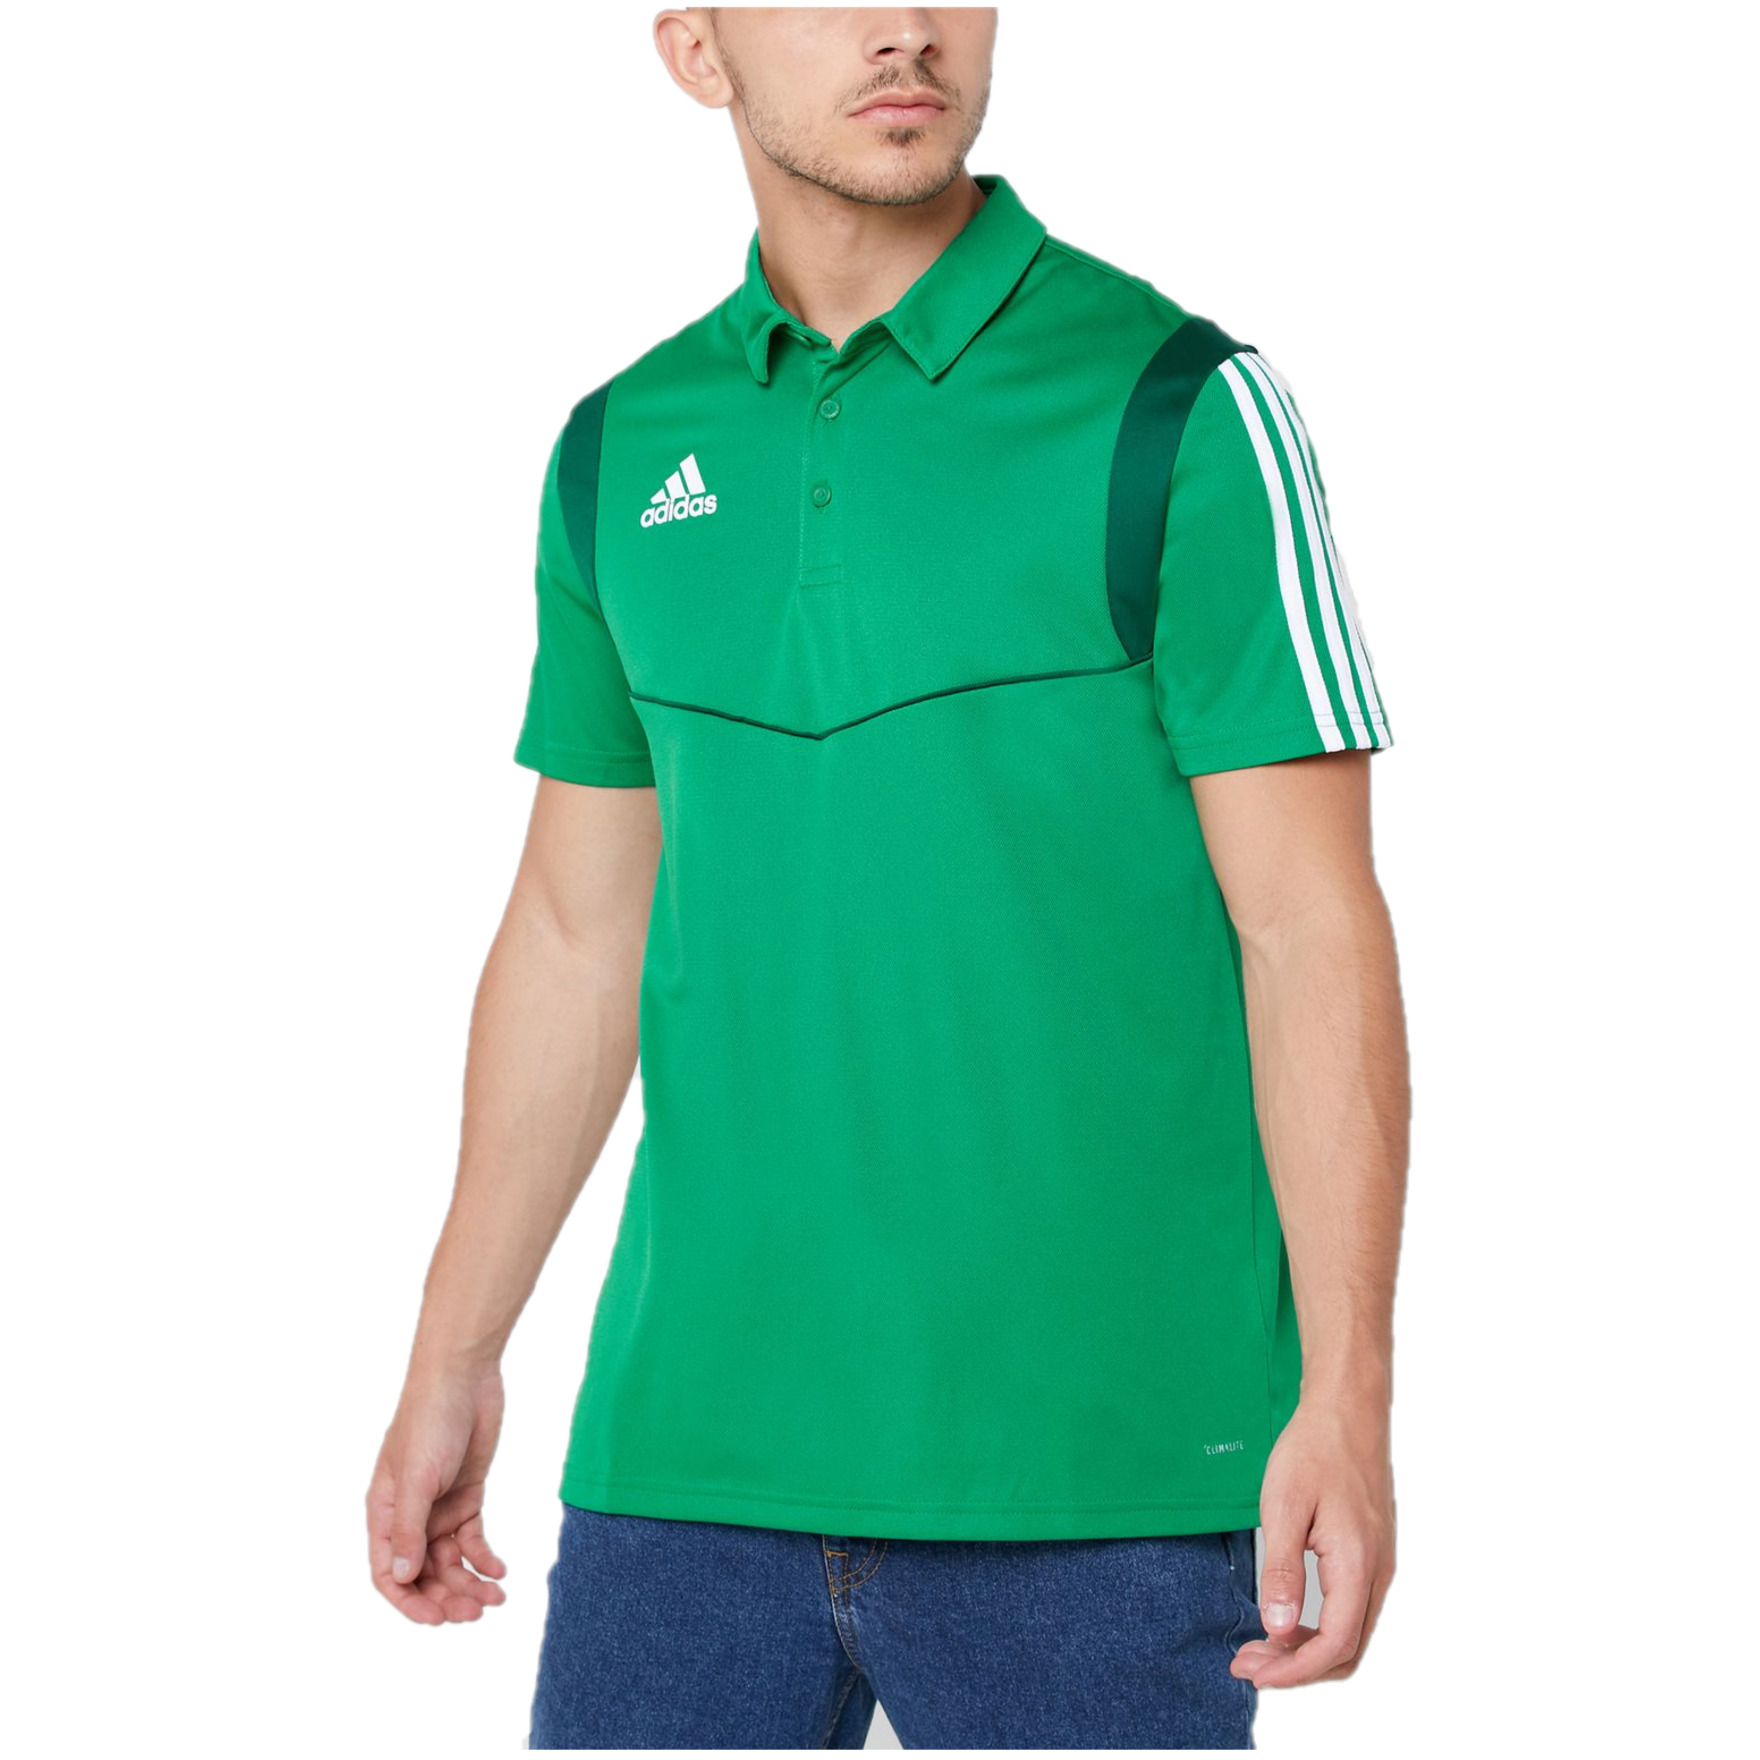 adidas Football Polo Shirt (Size S) Men's Tiro19 Logo Print Polo Top - New